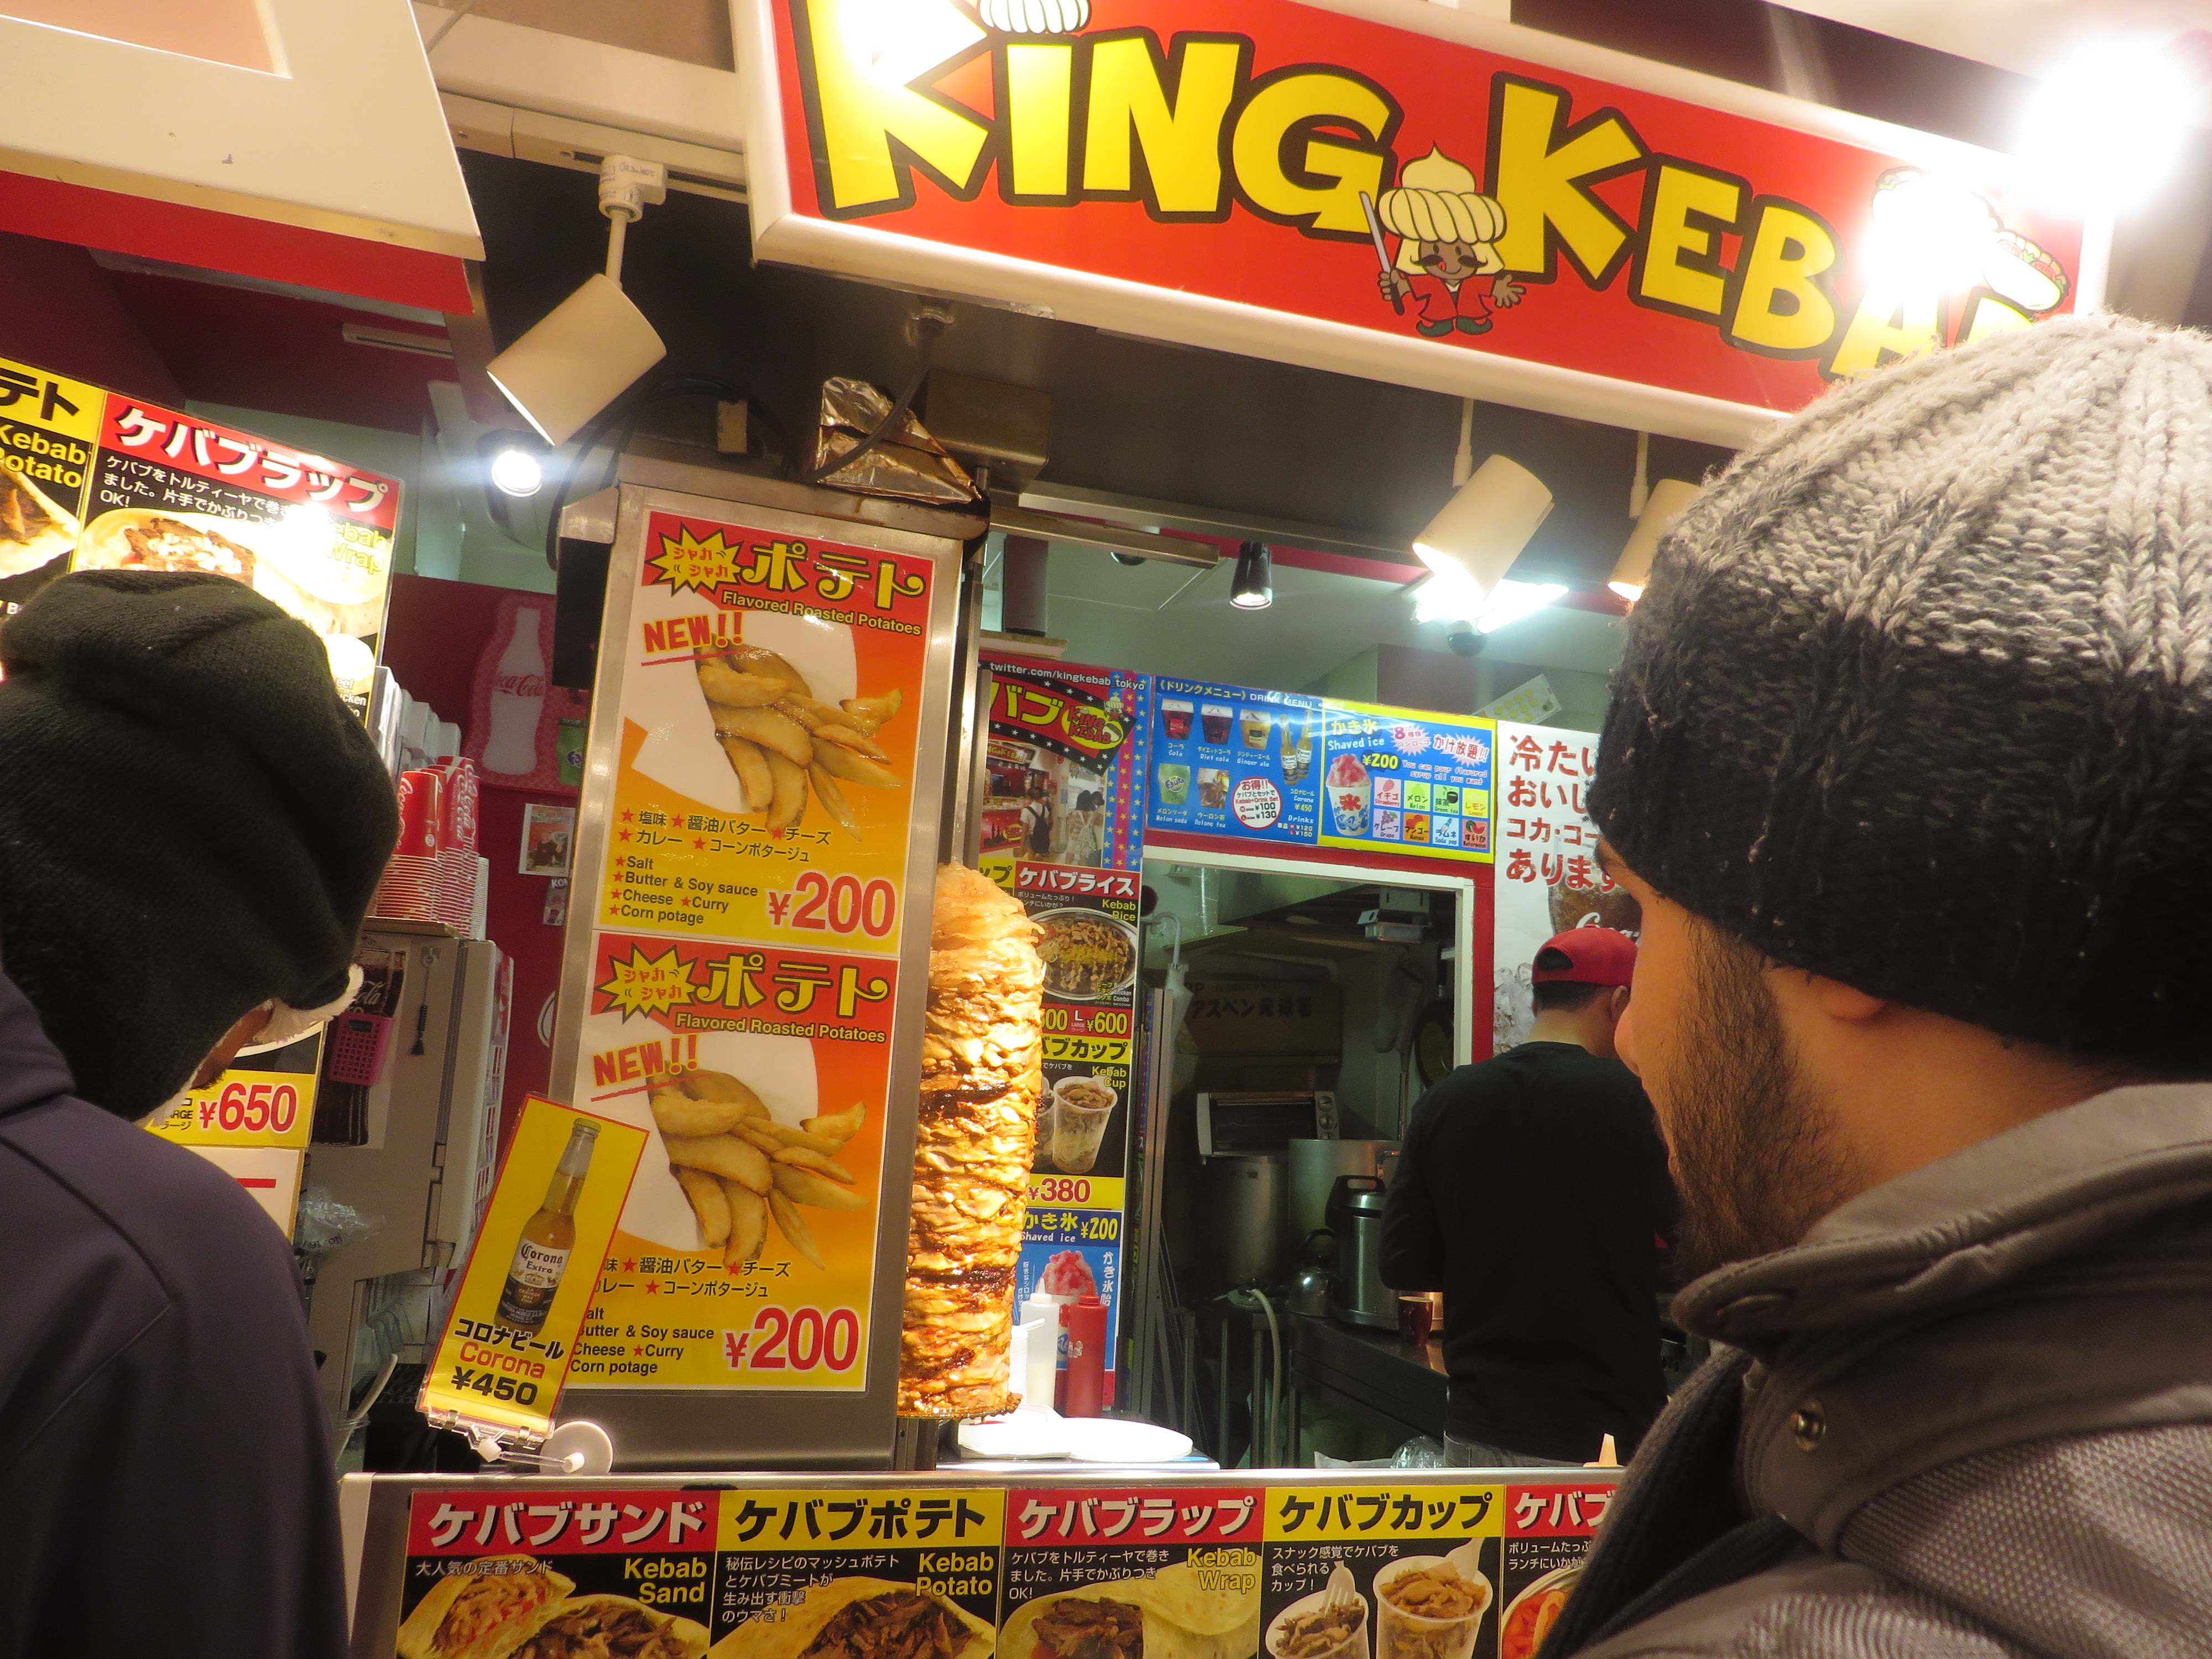 King Kebab at Harajuku